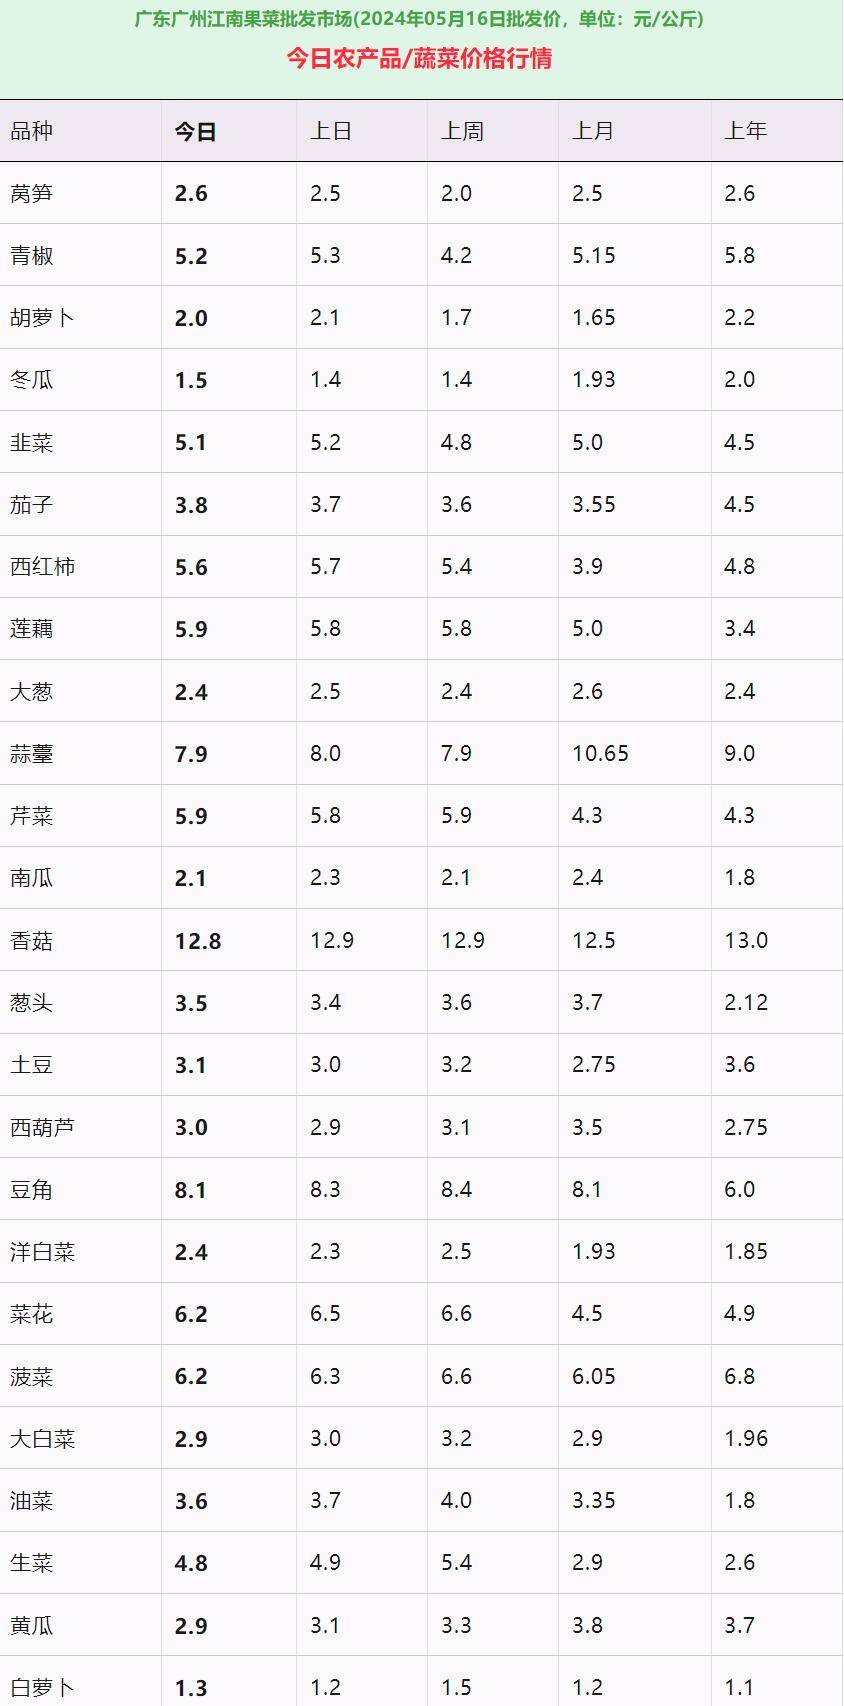 广州江南果菜批发市场蔬菜价格报价表:近一周莴笋,青椒,胡萝卜涨幅靠